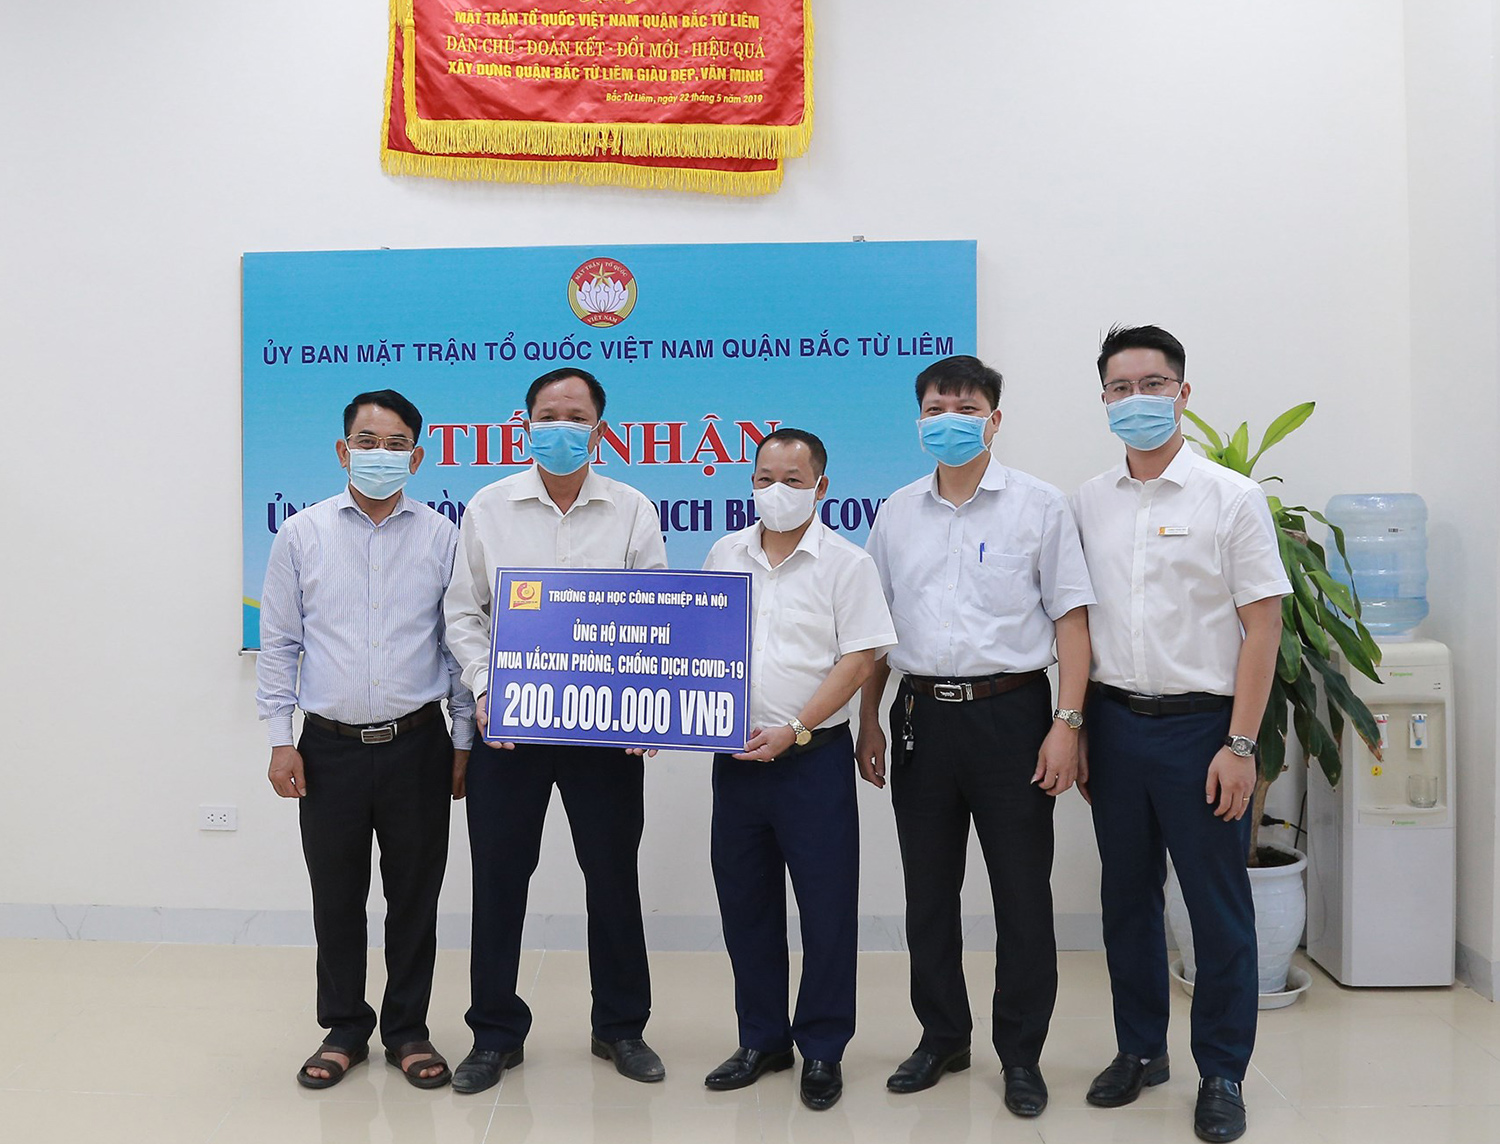 Đại học Công nghiệp Hà Nội ủng hộ 200 triệu đồng cho “Quỹ vắc-xin phòng chống COVID-19”